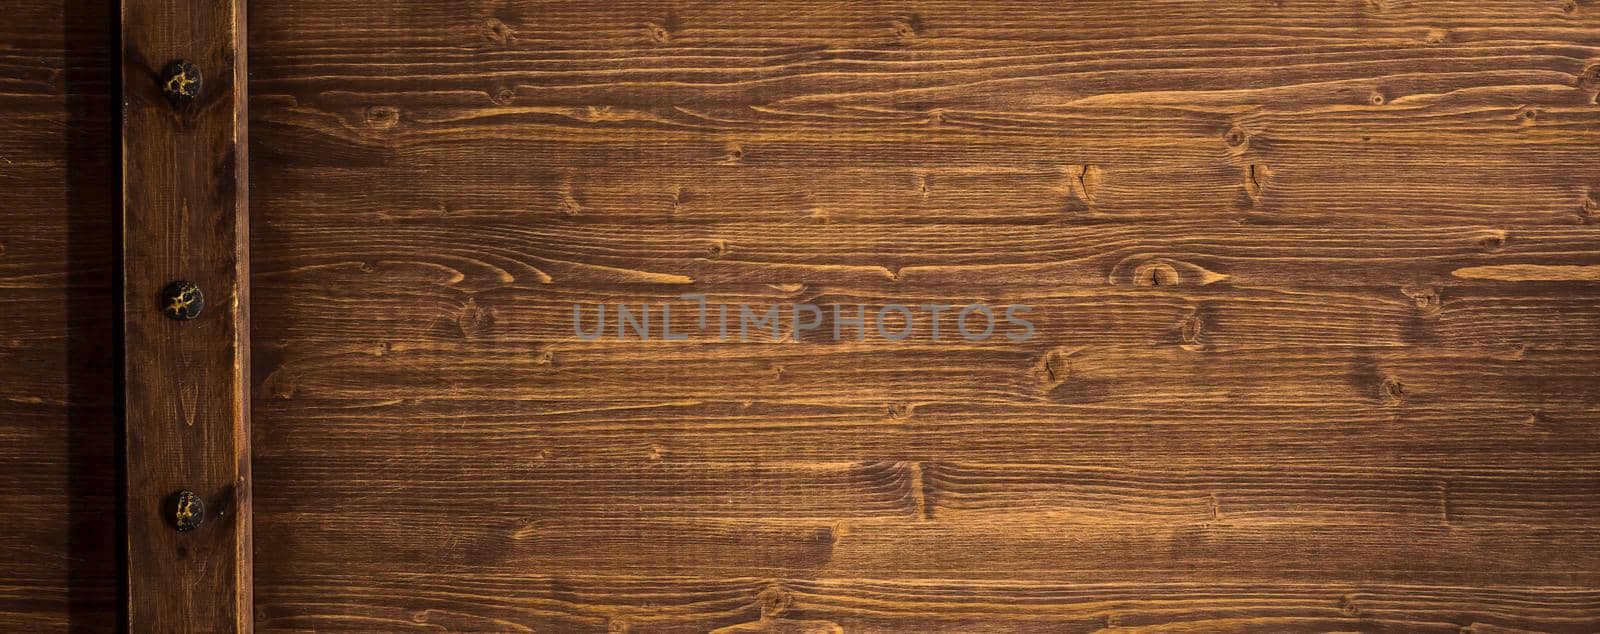 Grunge wooden texture background close up by vikiriki